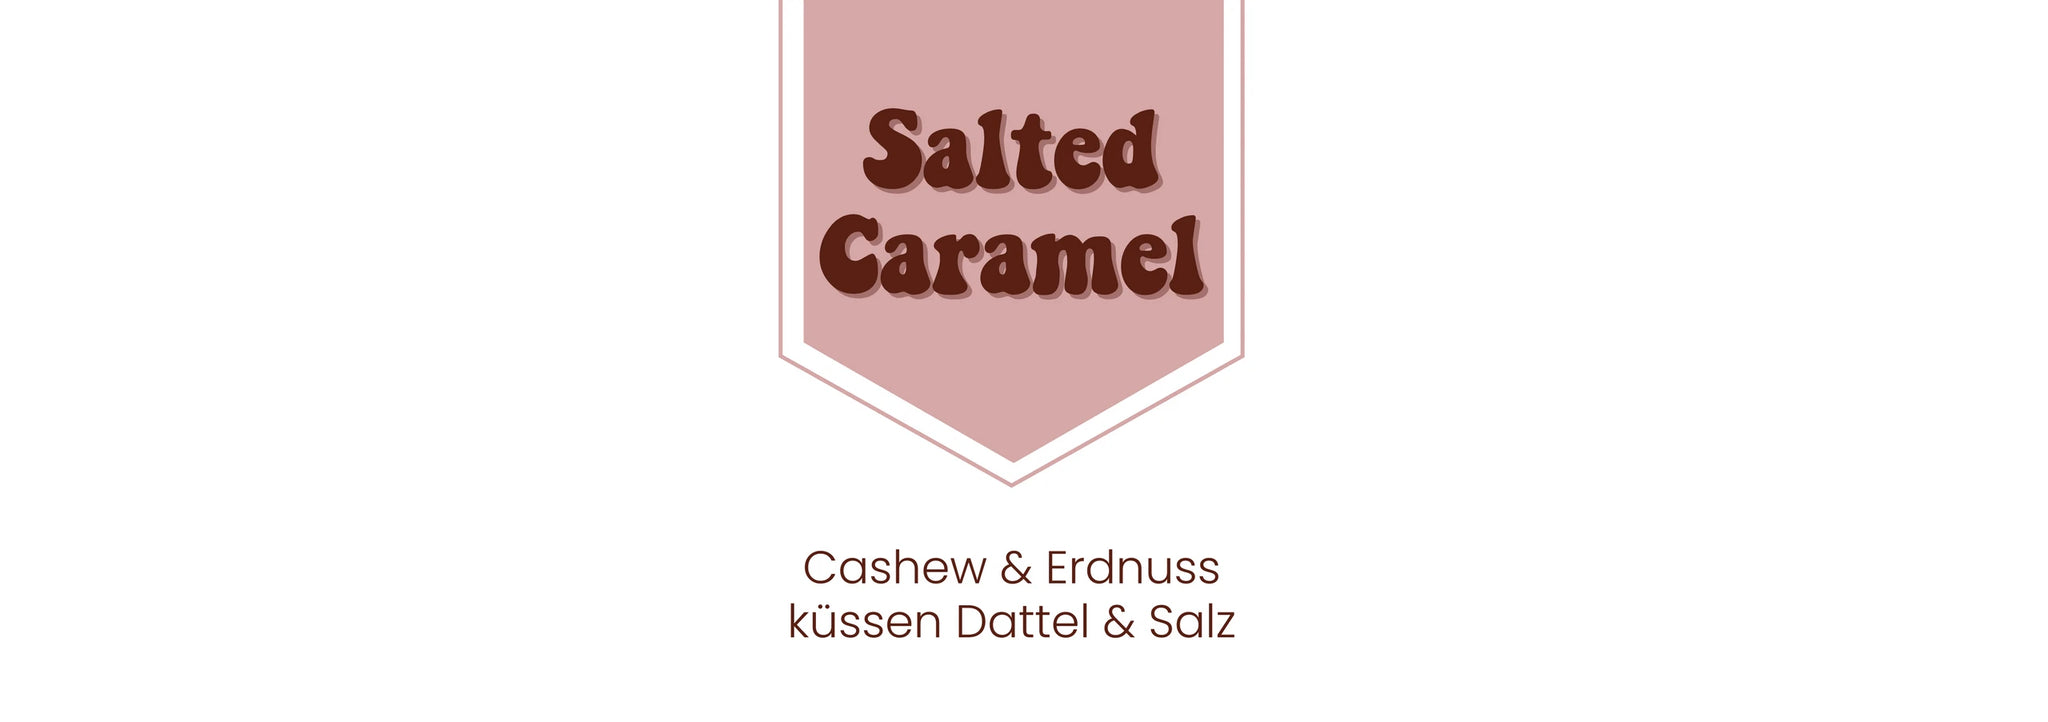 Nussbutter - Salted Caramel